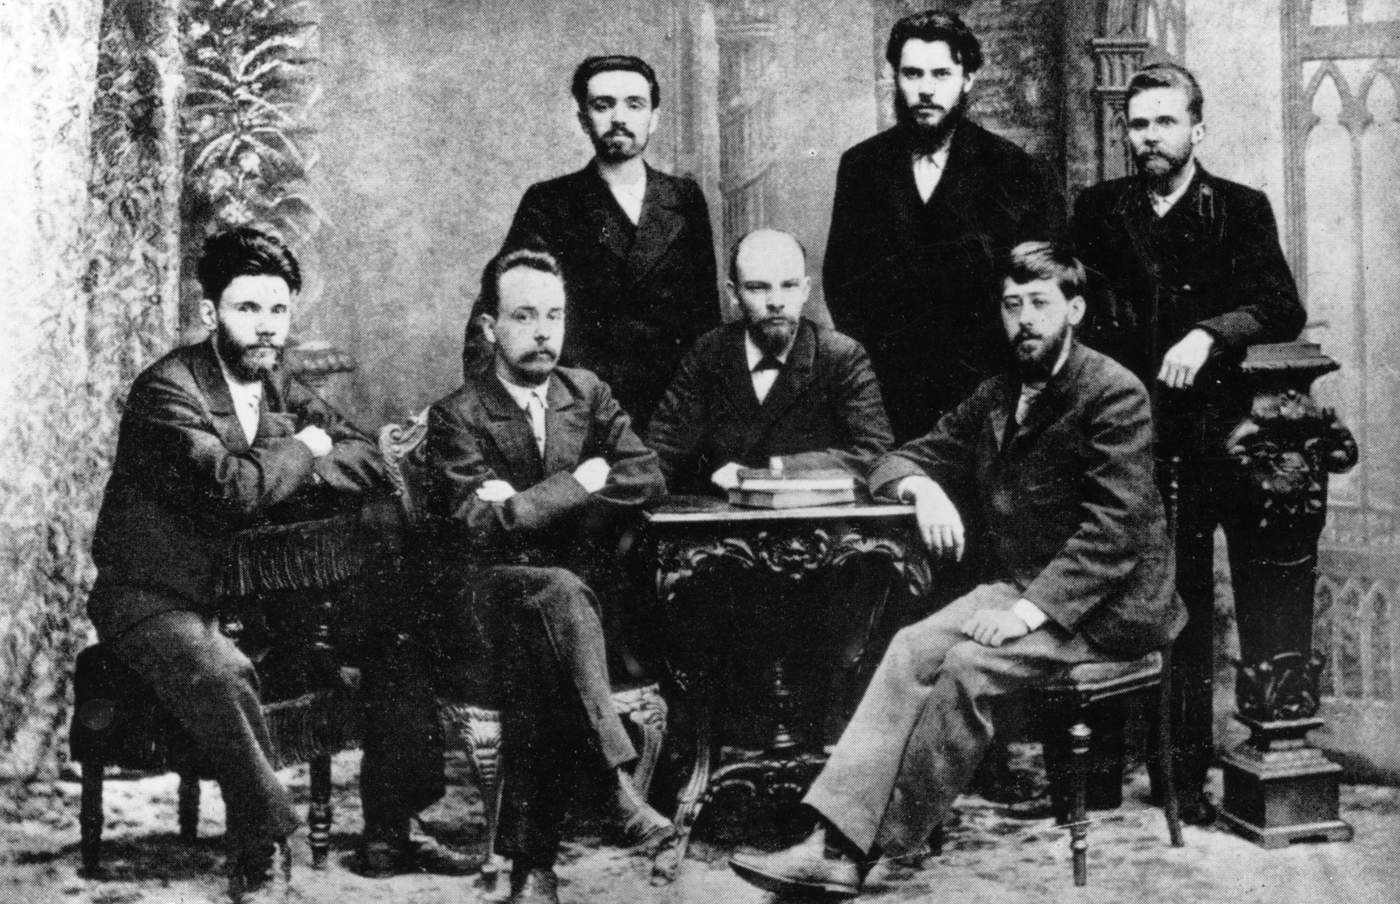 O dönemin önde gelen sosyalist liderleri. Oturanlar (soldan sağa): Starkov, Krzhizhanovsky, VI Lenin, Martov. Ayaktakiler (soldan sağa): Malchenko, Zaporozhets, Vaneyev.&amp;nbsp;